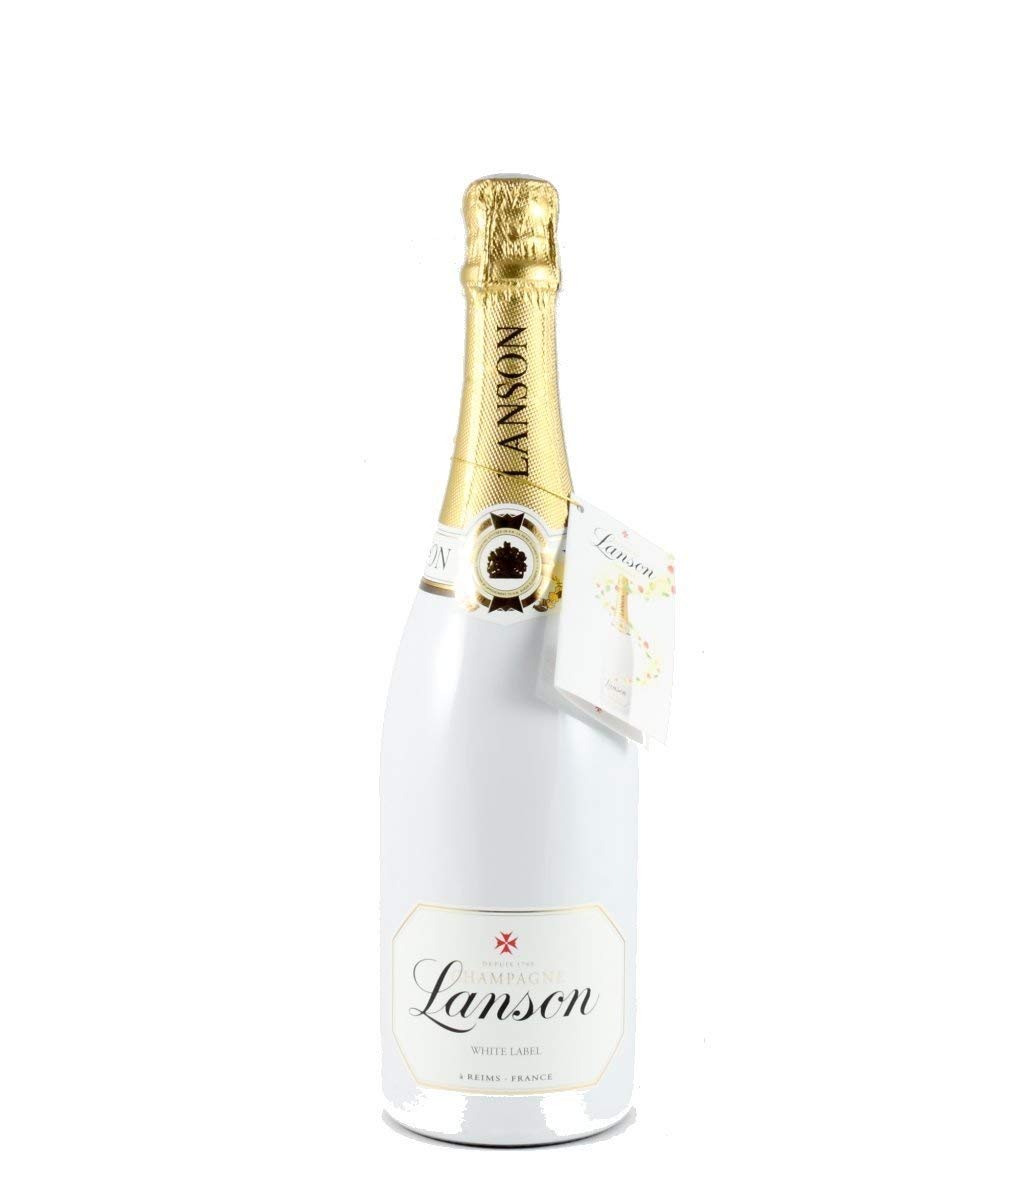 Botella champagne lanson white label 0.75l